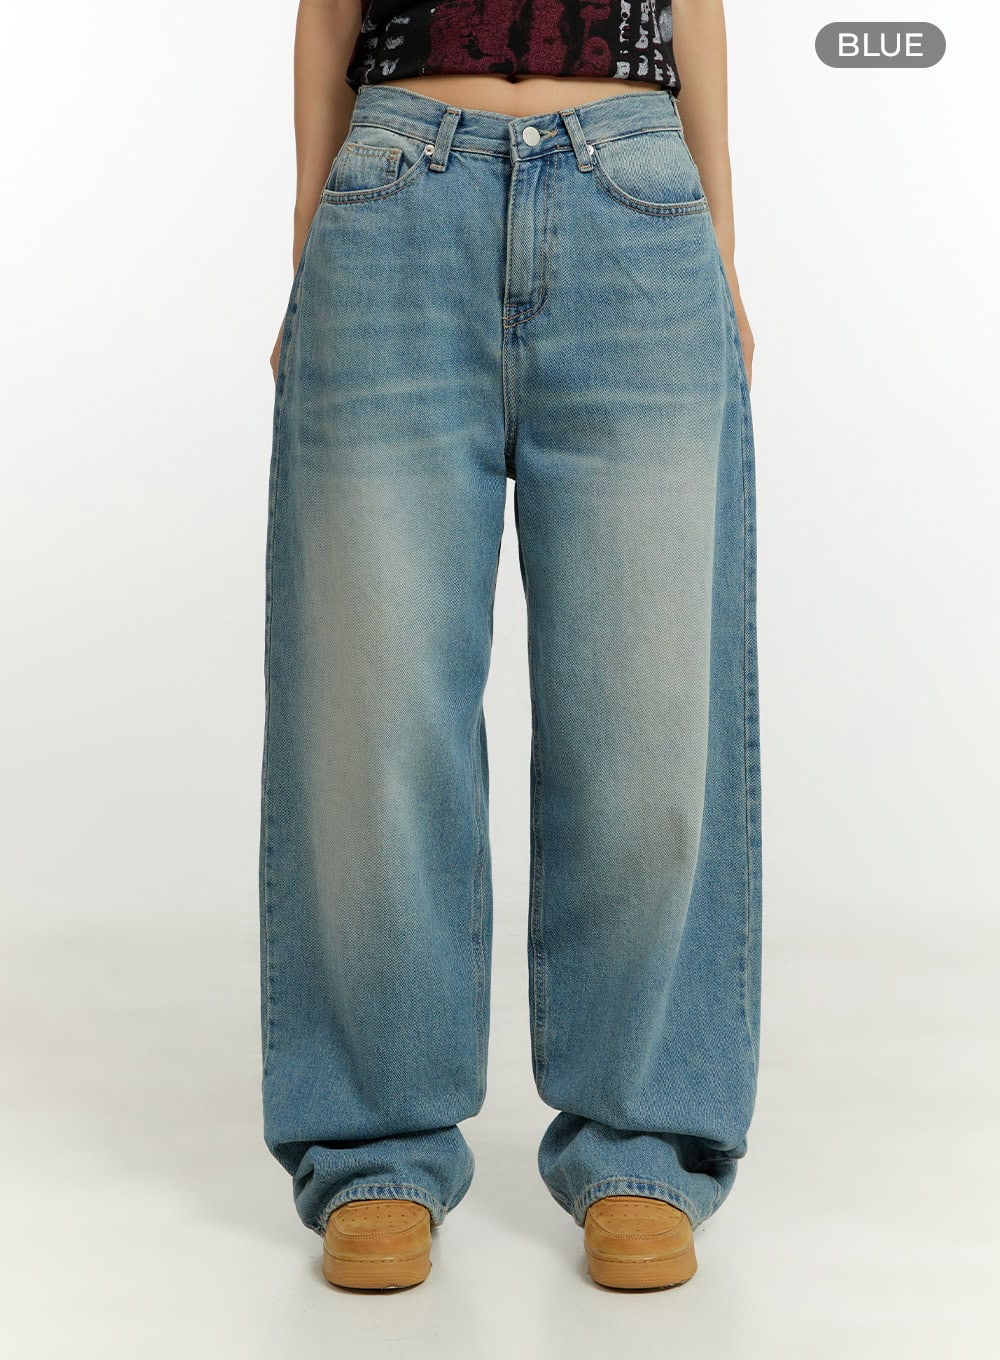 loose-fit-baggy-jeans-cu426